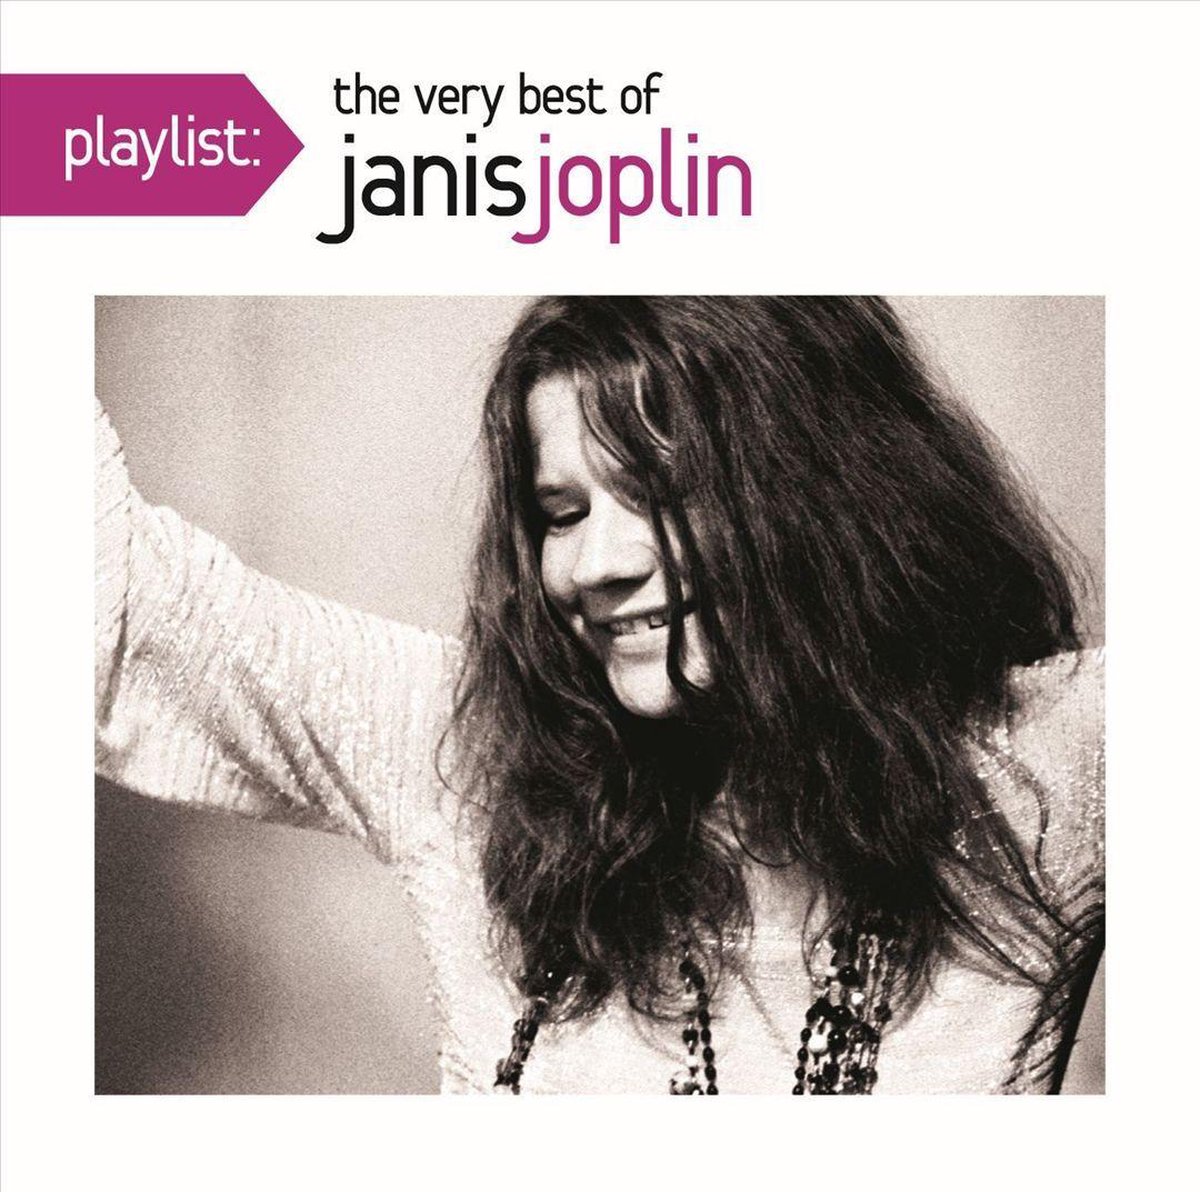 Playlist: The Very Best of Janis Joplin - Janis Joplin